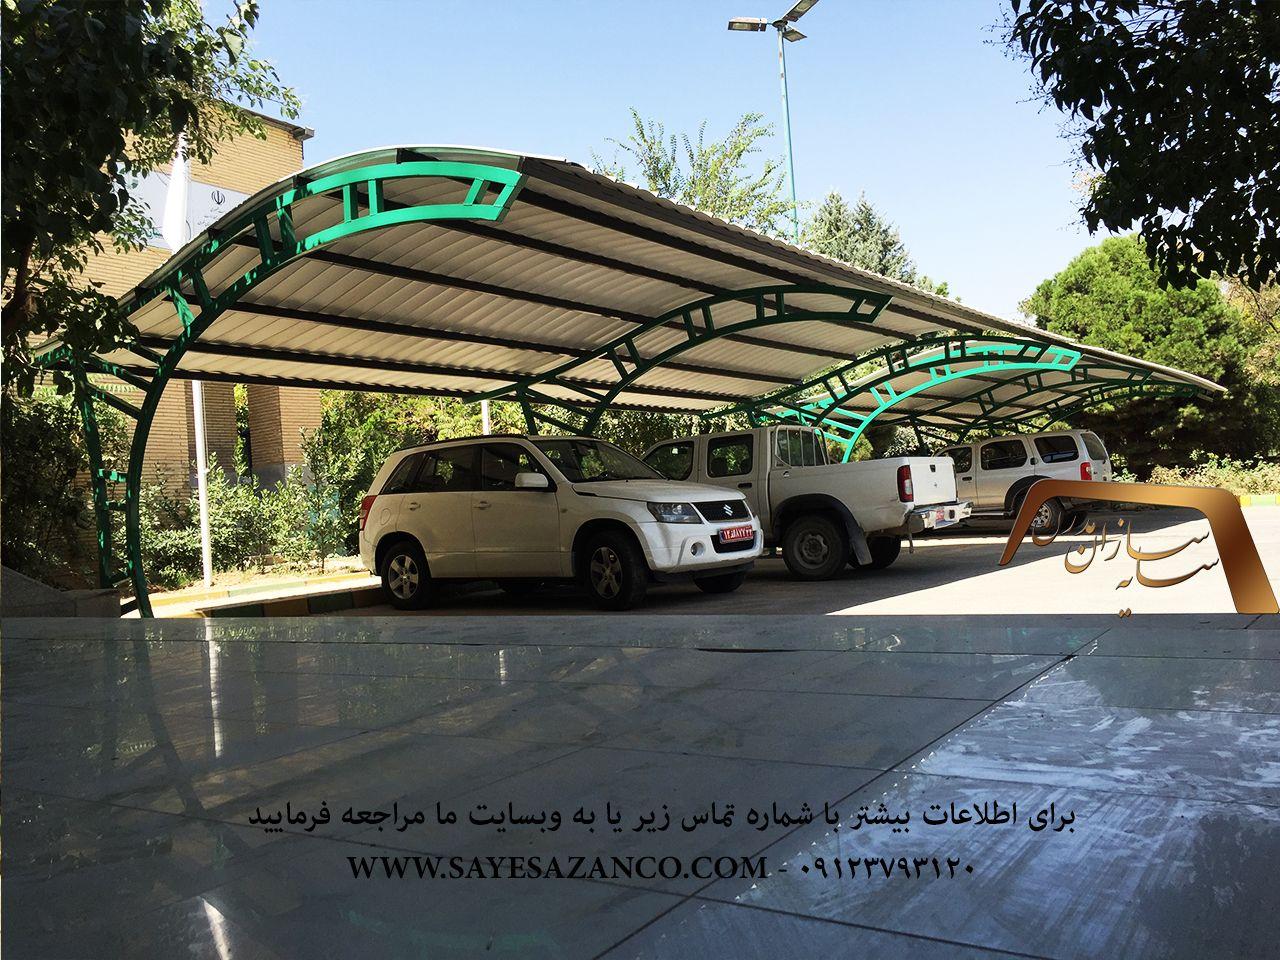 سایه سازان مدرن اجراکننده سایه بان ، سایبان ماشین ، سایبان پارکینگ ، سایبان حیاط ، سایبان خودرو در تهران کرج و مشهد